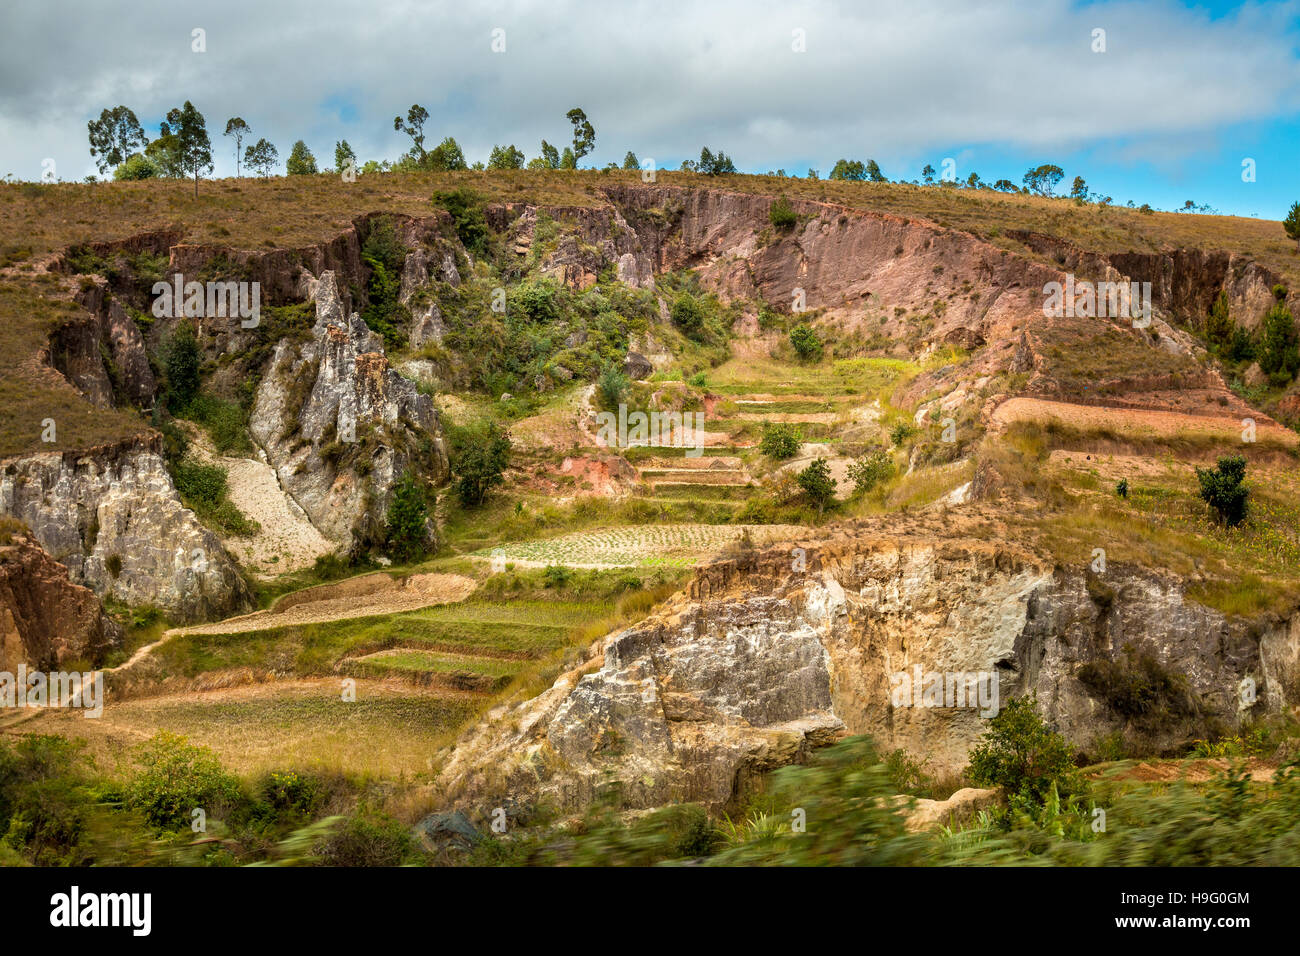 Beau paysage malgache avec collines érodées formant caractéristiques géologiques intéressants Banque D'Images